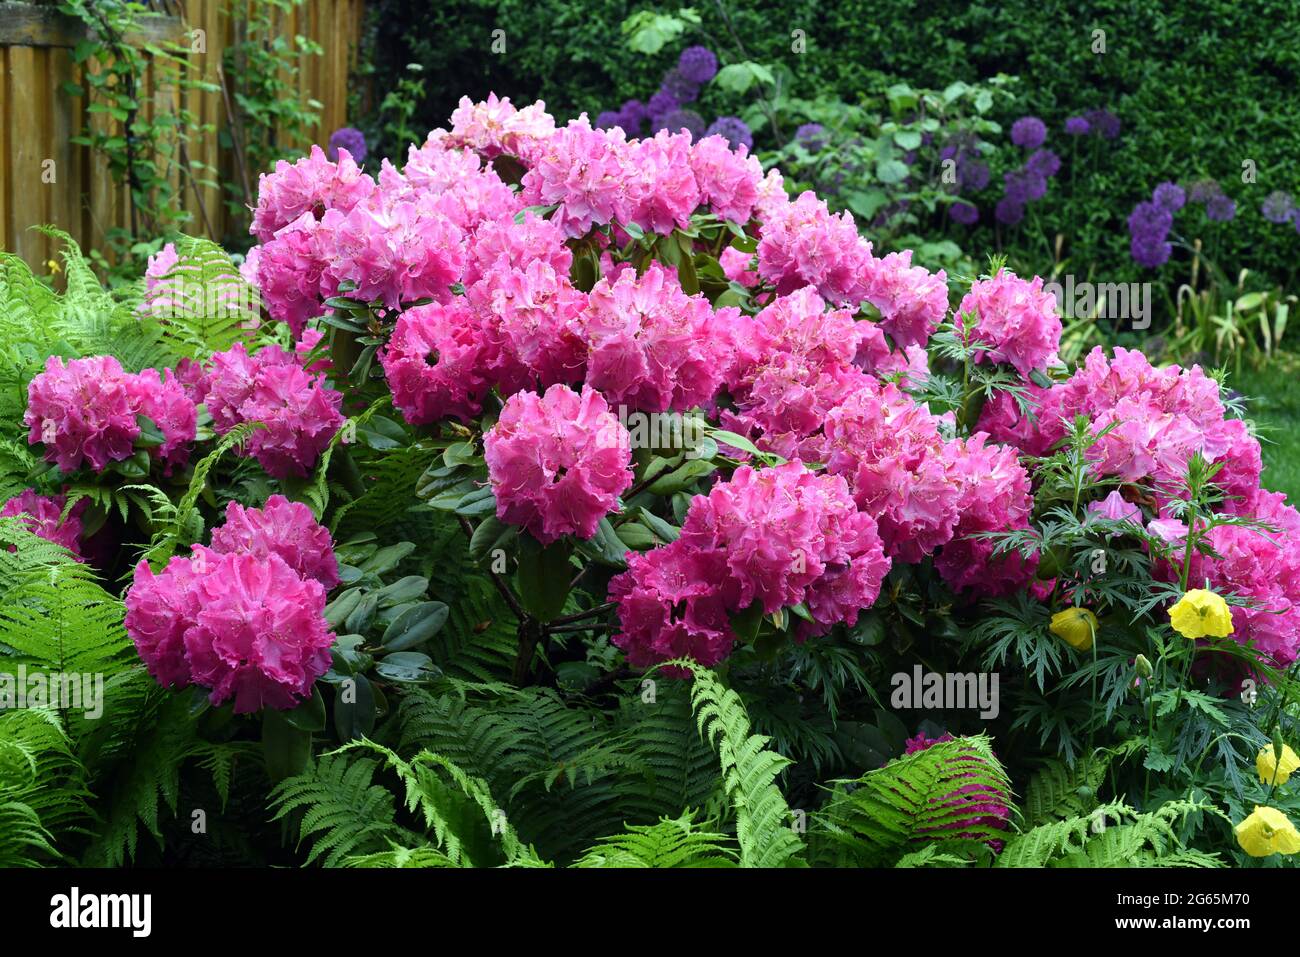 Rhododendron Germania, ist ein immerguenes Zwergehoelz, das im Fruehjahr wunderschoene Blueten hervorbringt. Rhododendron Germania is an evergreen dwa Stock Photo